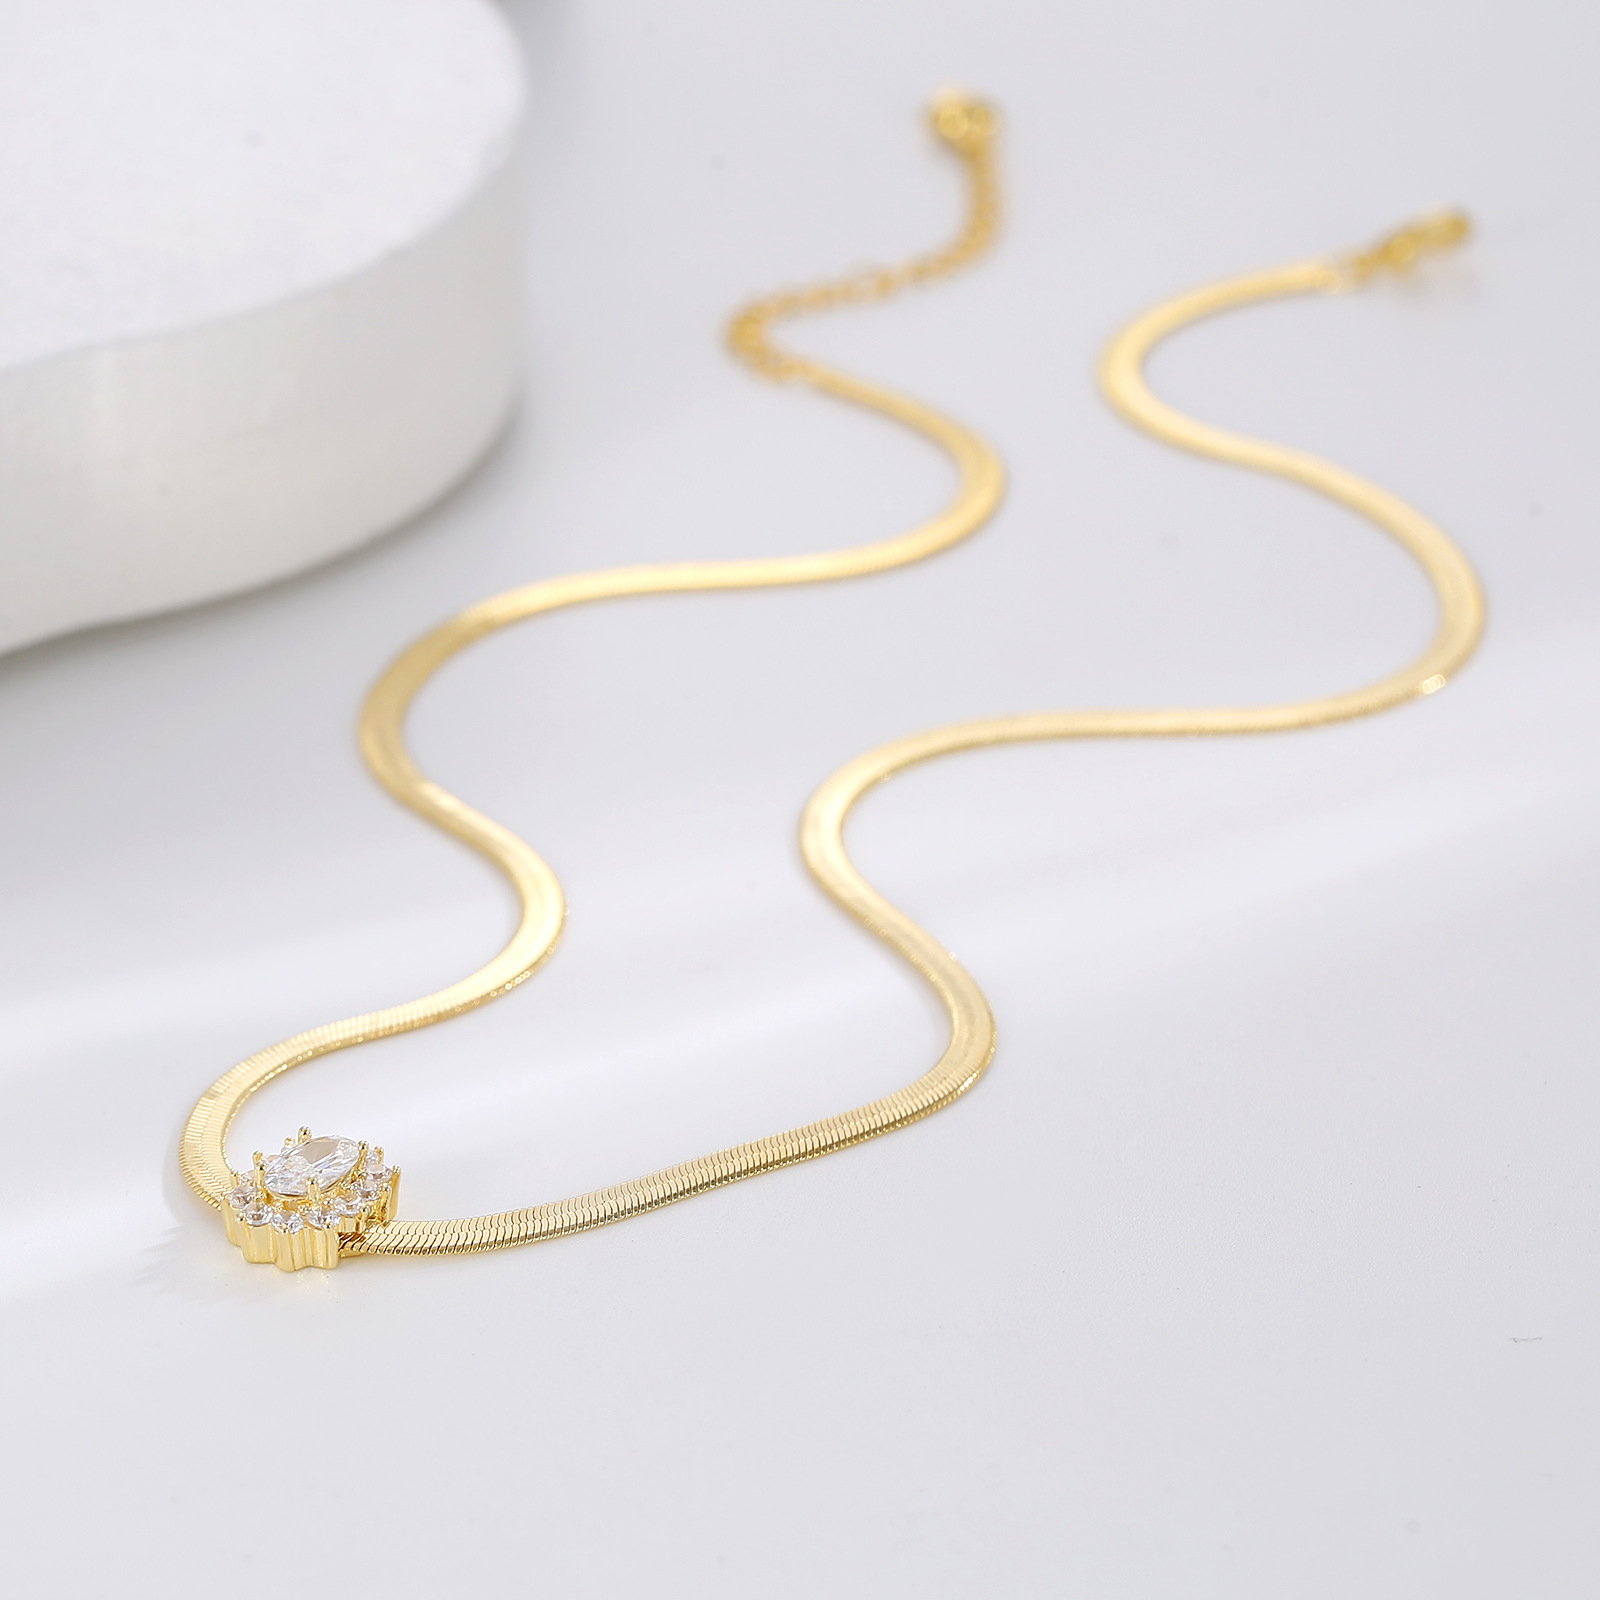 1:White diamond gold chain